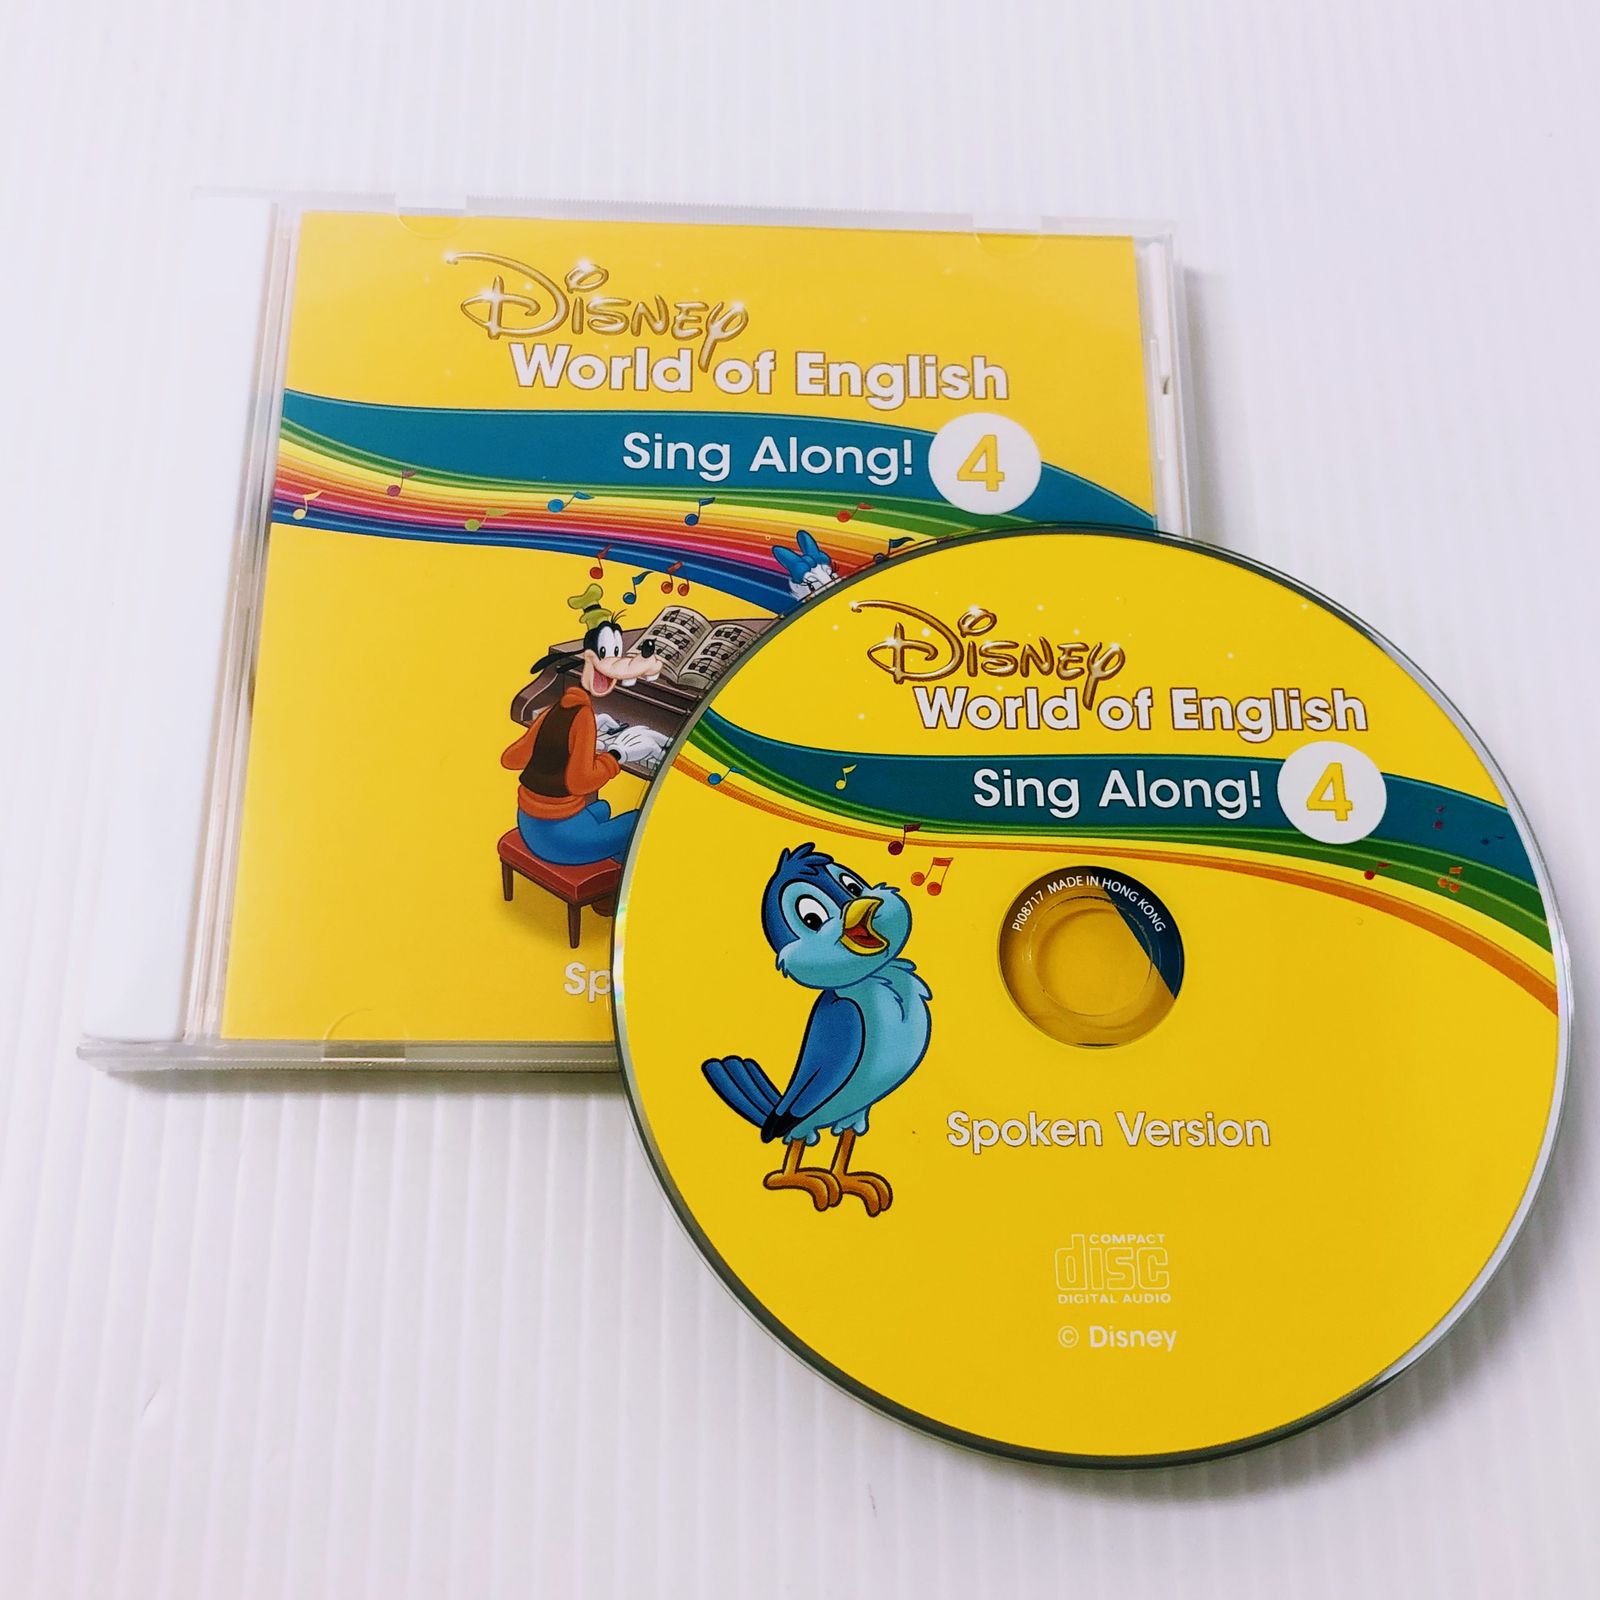 ディズニー英語システム シングアロング CD 4巻 Spoken Version 英語 